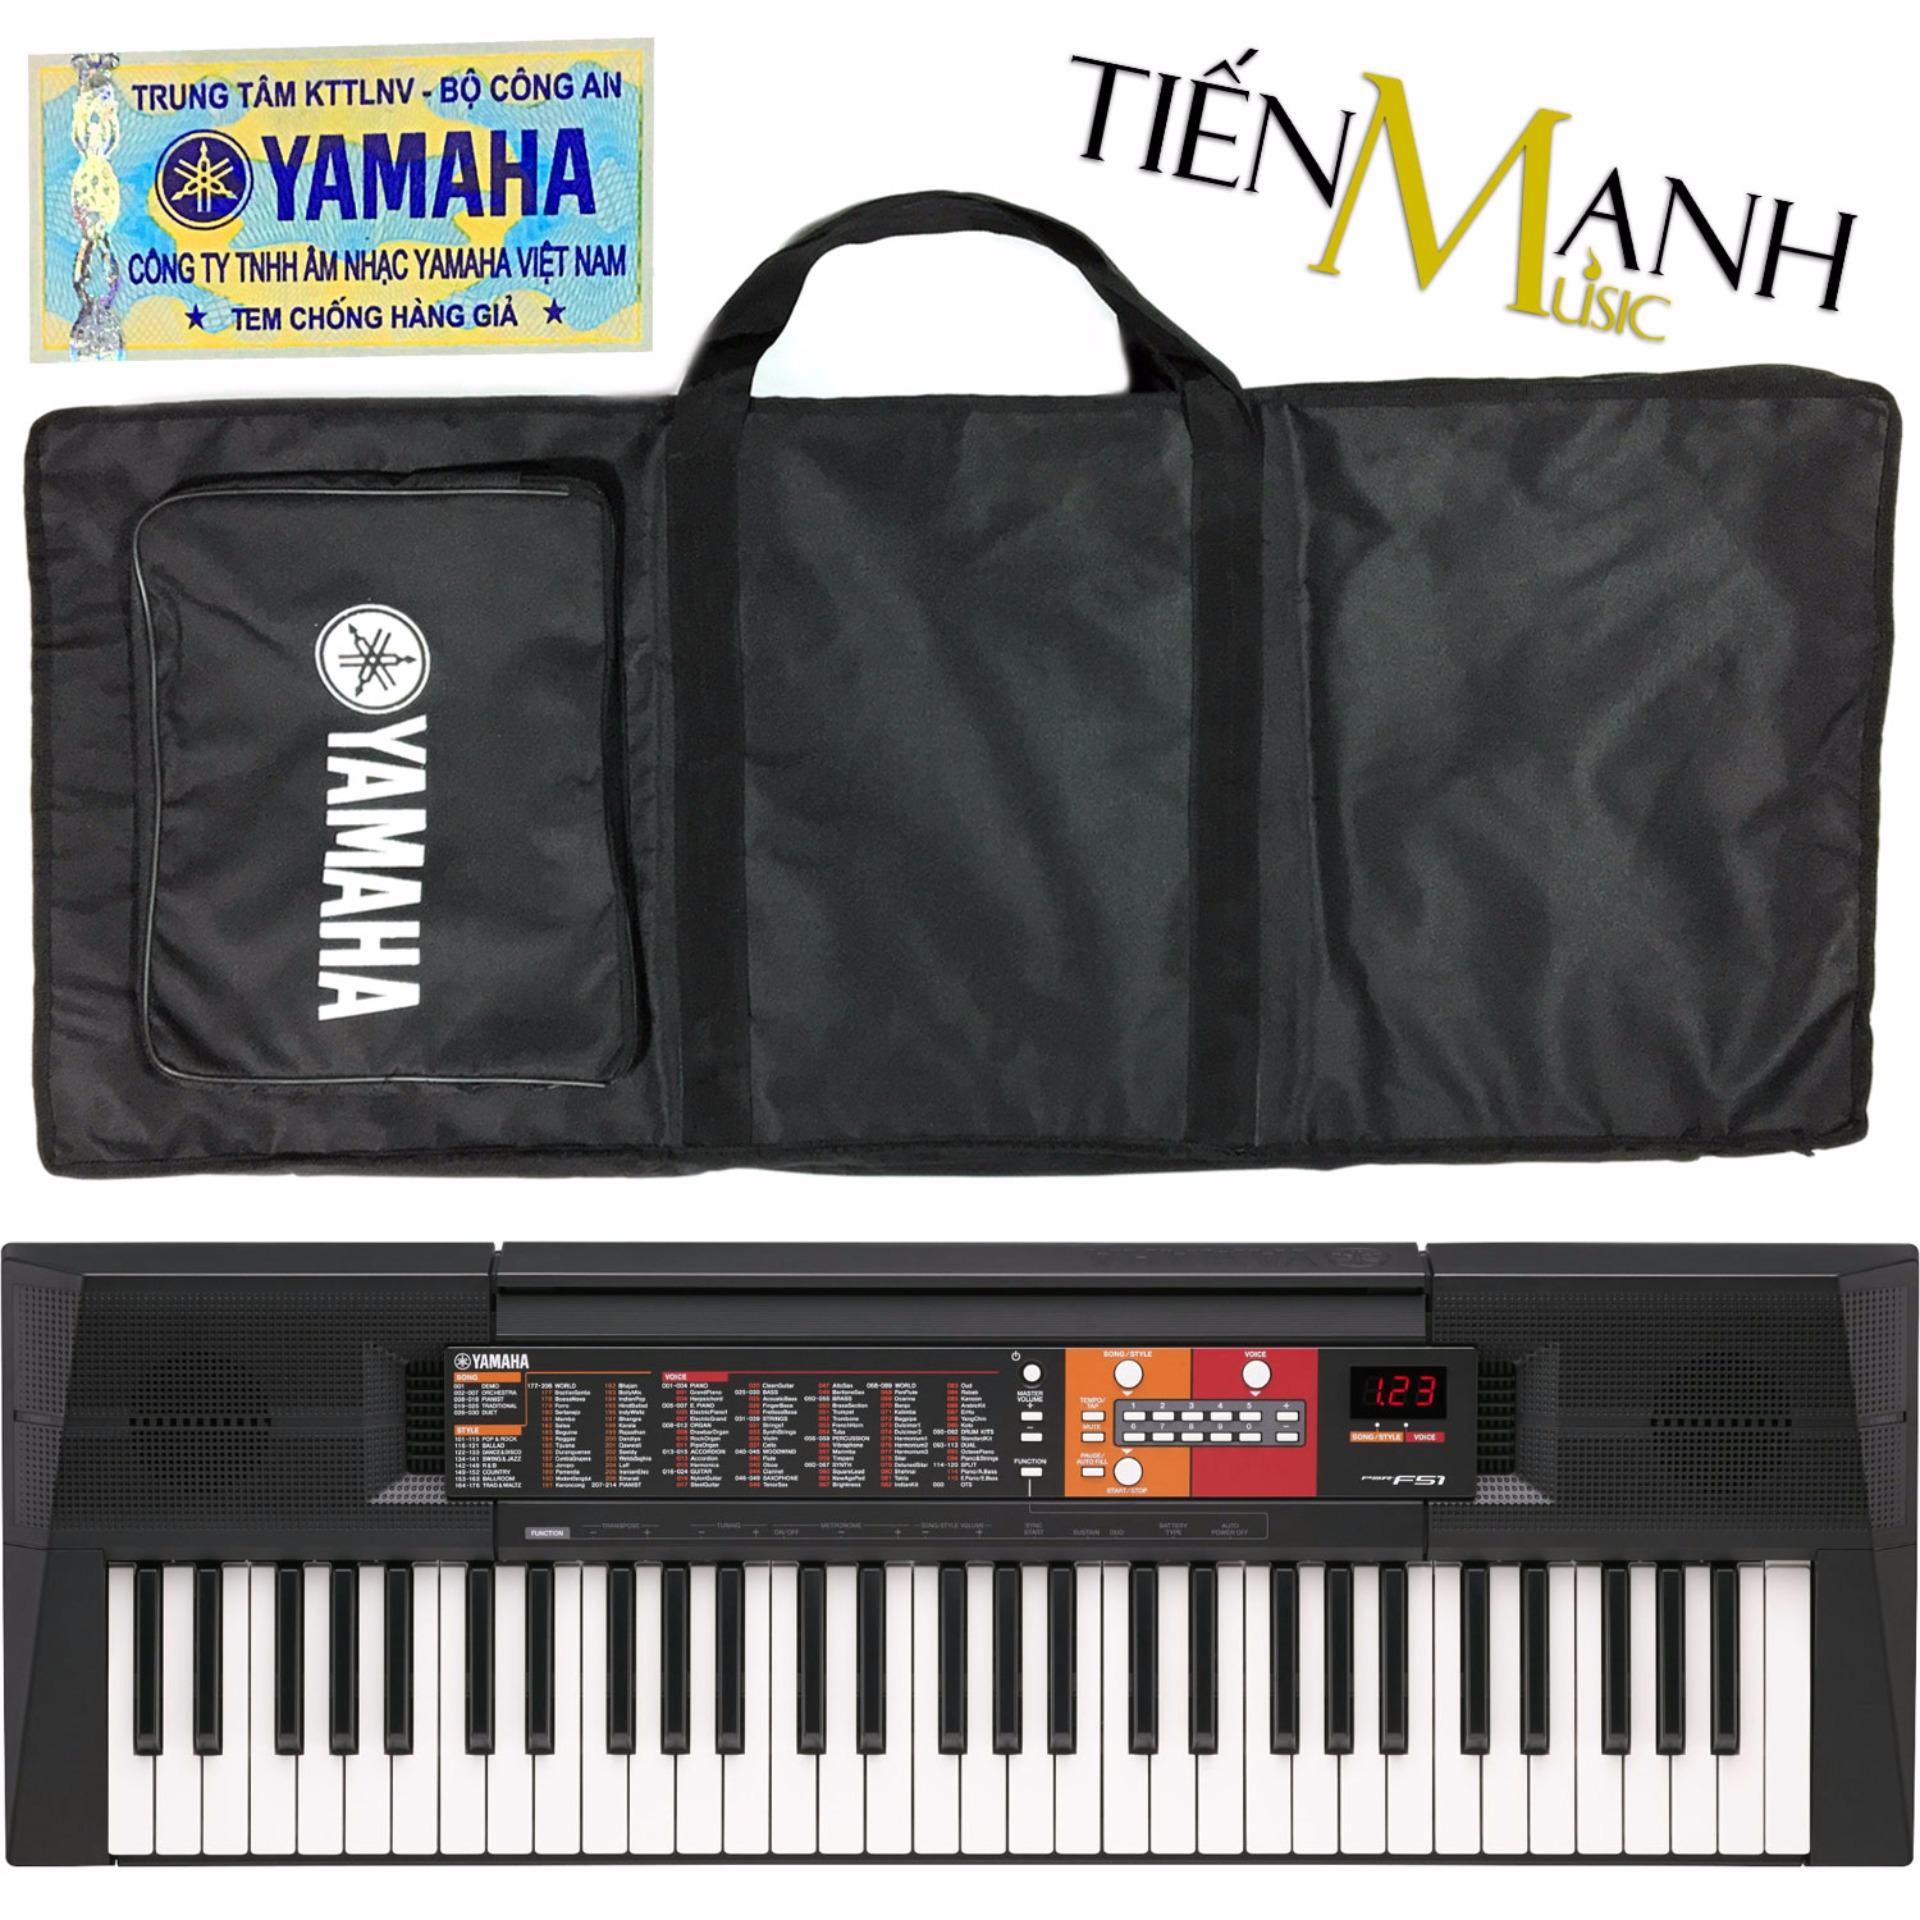 Đàn Organ Yamaha PSR-F51 - Hãng phân phối chính thức (Keyboard PSR F51 - Hàng chính hãng, Có tem chống...